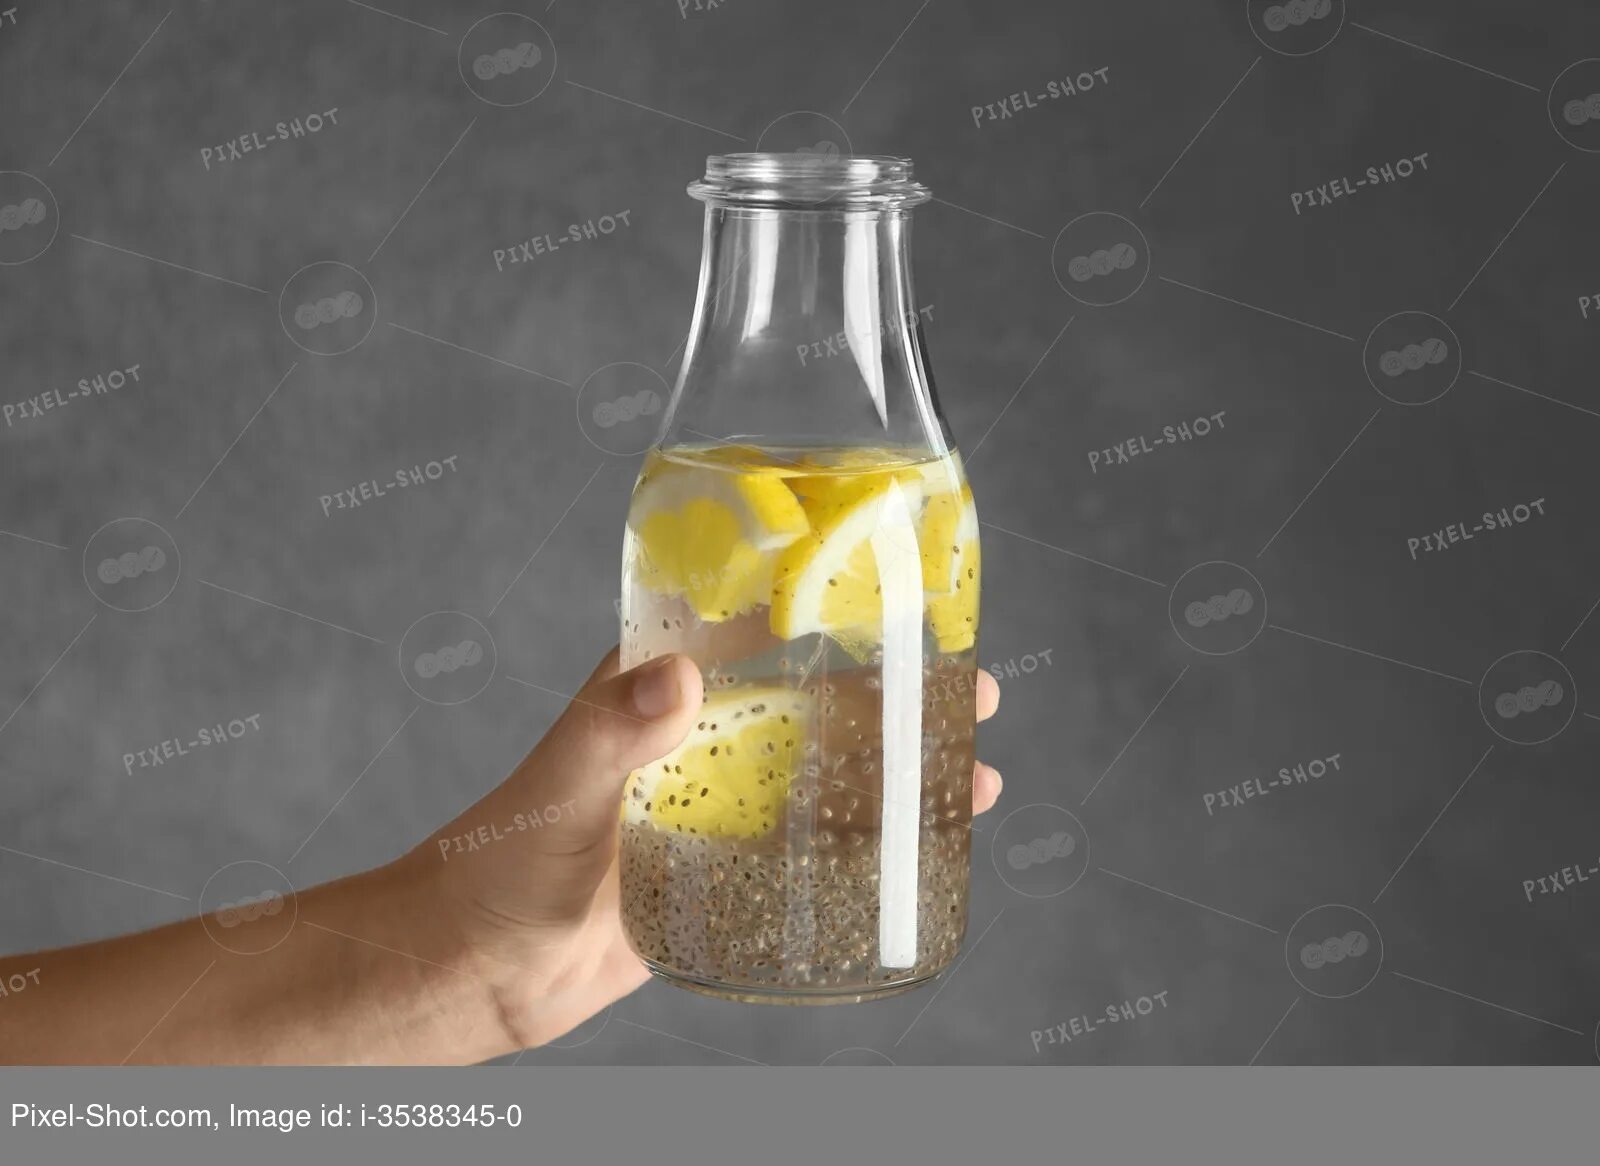 Чиа с водой и лимоном. Семена чиа с водой и лимоном. Вода с чиа и лимоном. Напиток с семенами чиа и лимоном. Бутылка для воды с семенами чиа.